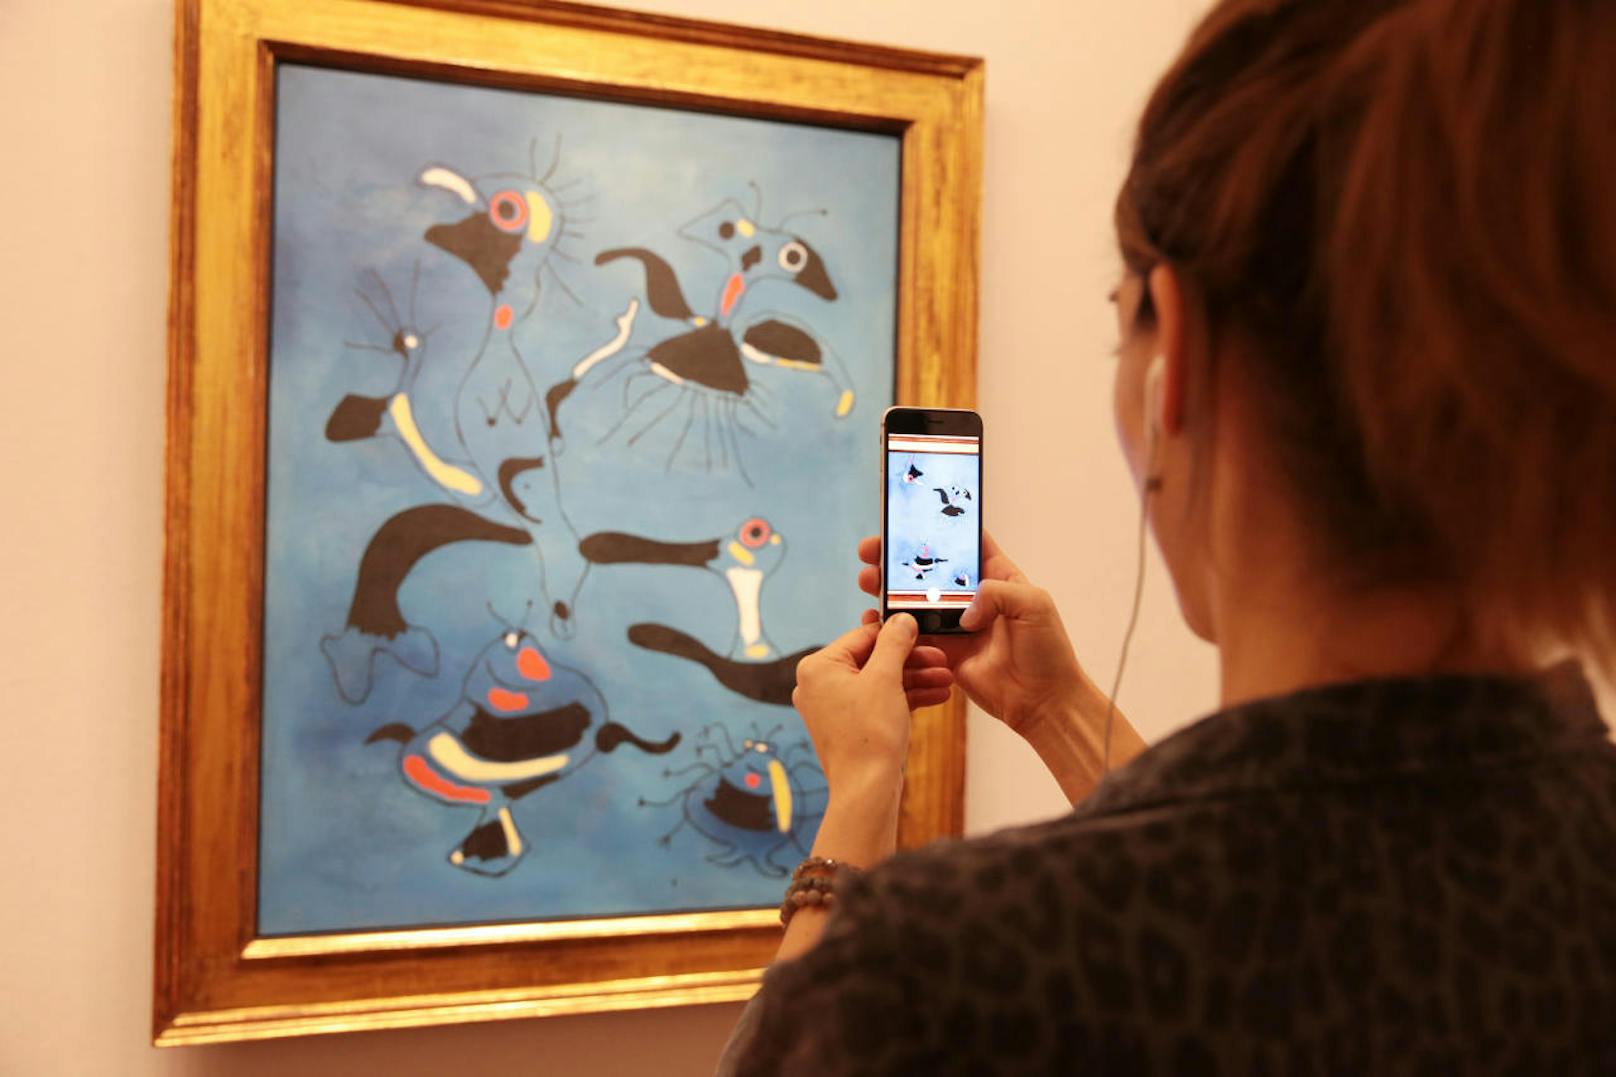 In der Albertina können erstmals in einem europäischen Museum ausgewählte Exponate mithilfe der kostenlosen App Artivive in einer neuen Dimension erlebt werden. Halten Besucher ihr Smartphone oder Tablet vor die Werke, werden die Bilder mittels Animationen oder Videos zum Leben erweckt.
Bild: "Vögel und Insekten", Joan Miró